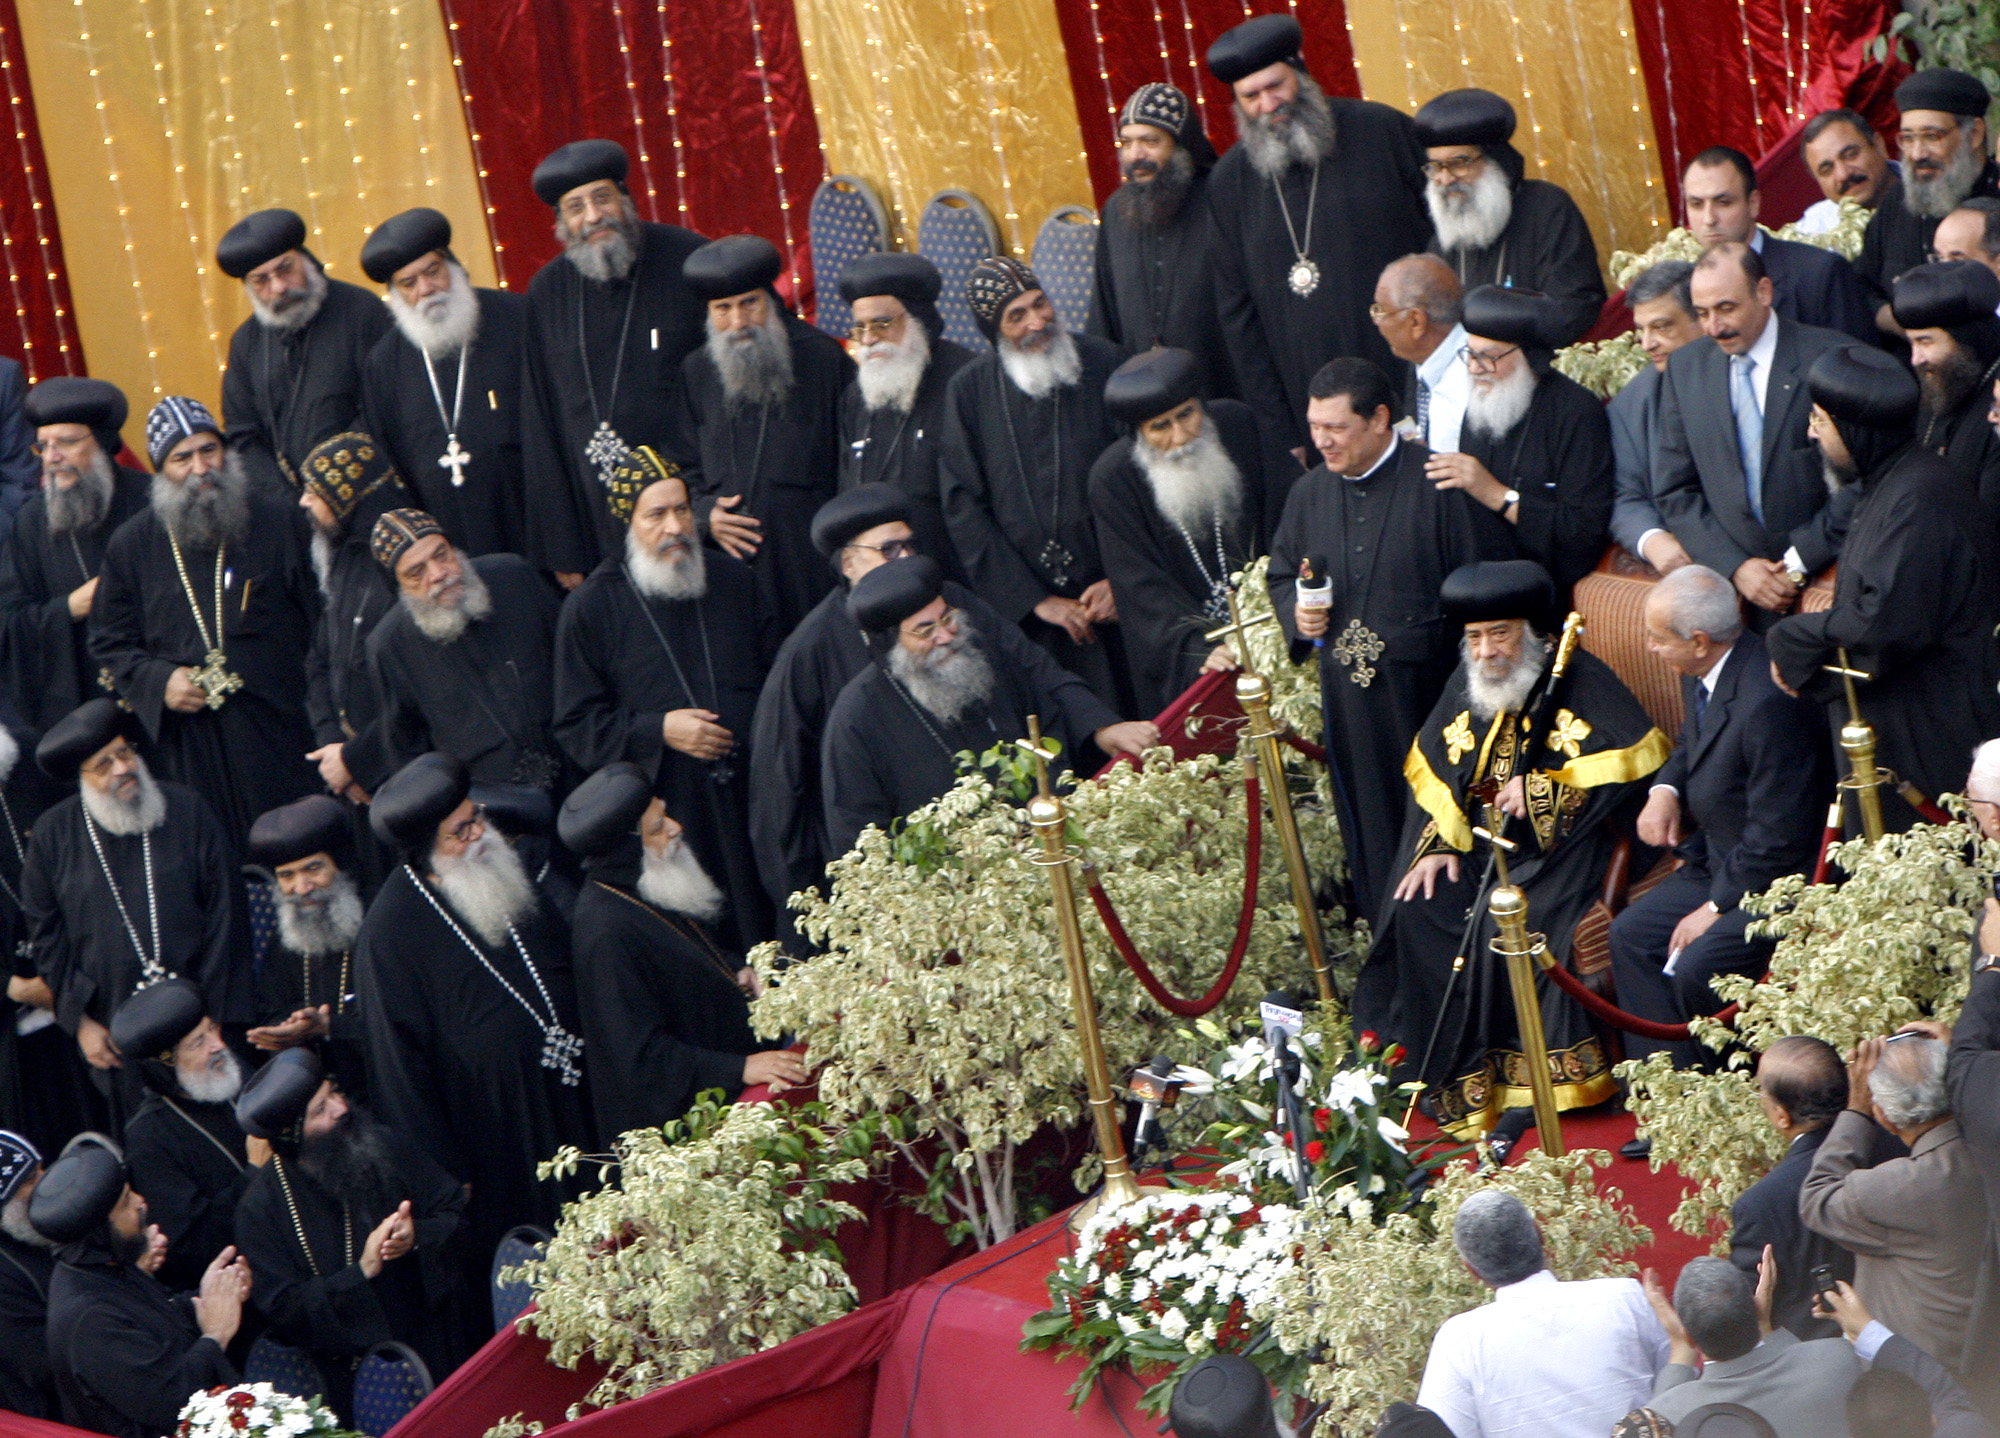 <b>Κόπτες Αιγύπου</b> Αποτελούν την μεγαλύτερη θρησκευτική μειονότητα στη Μέση Ανατολή